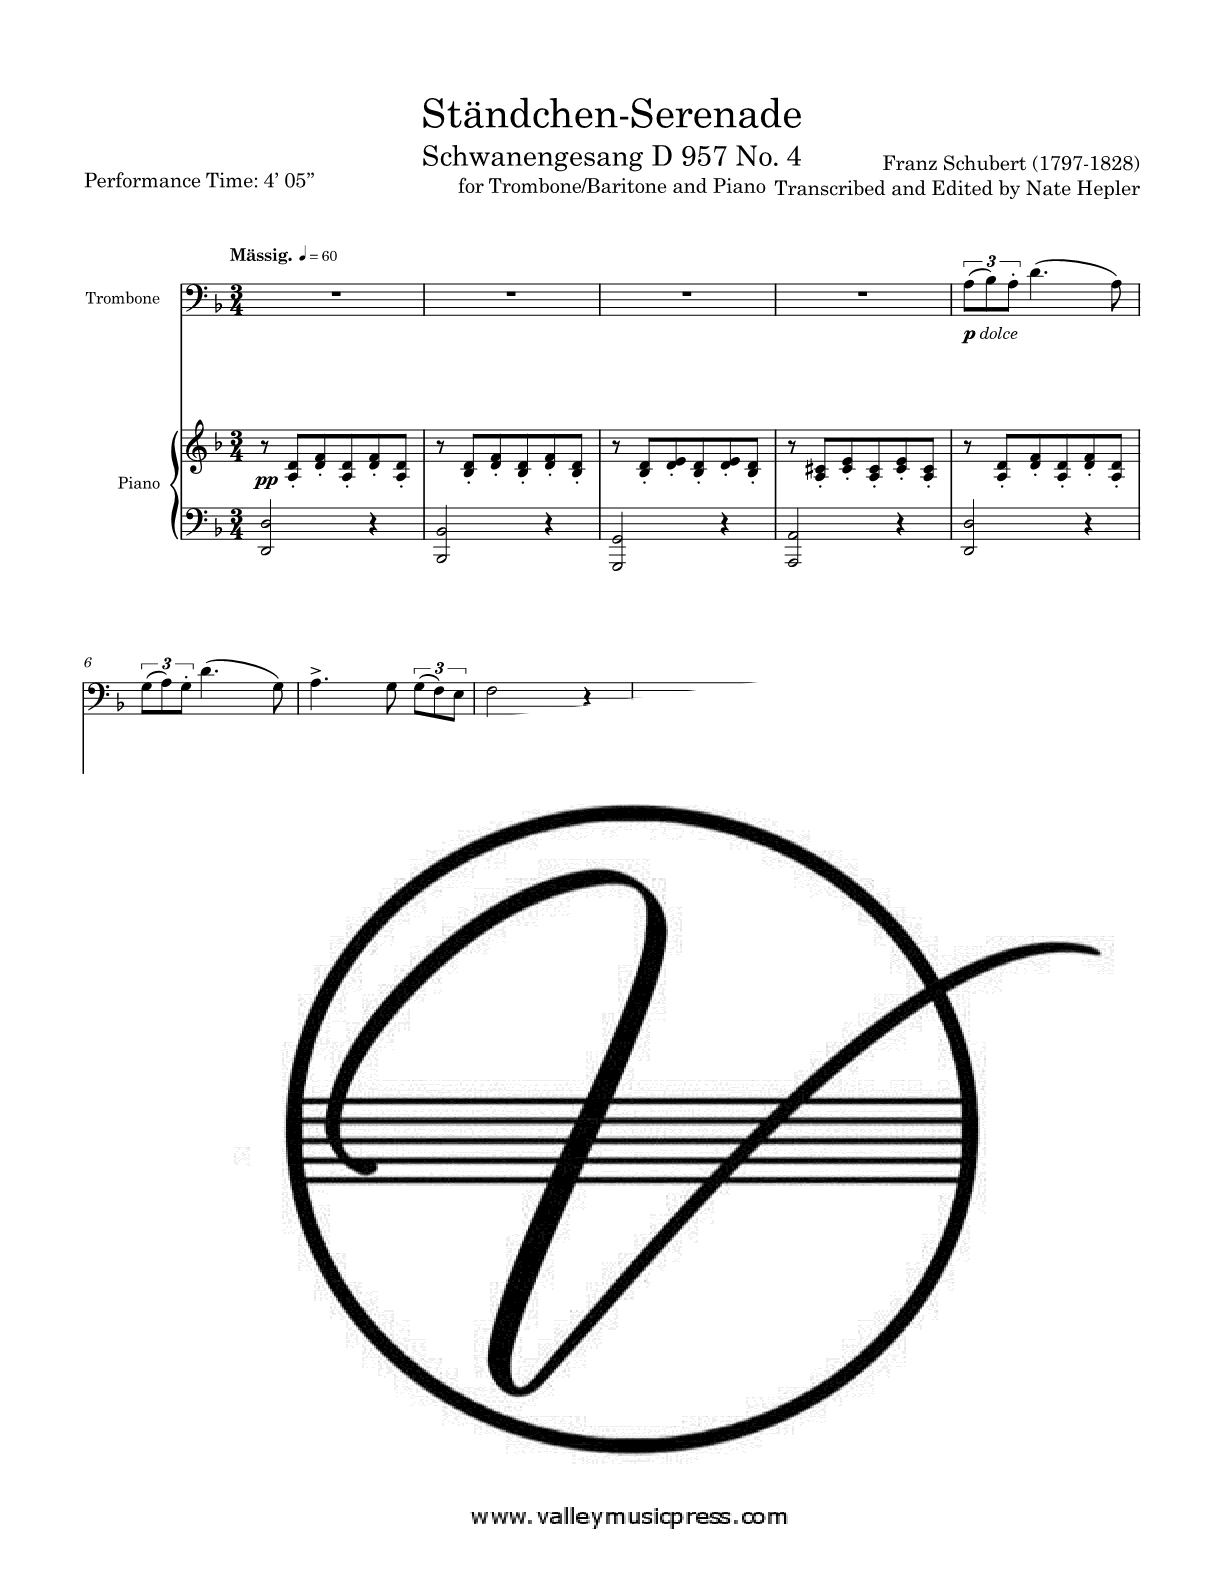 Schubert - Standchen Serenade Schwanengesang No. 4 (Trb & Piano)